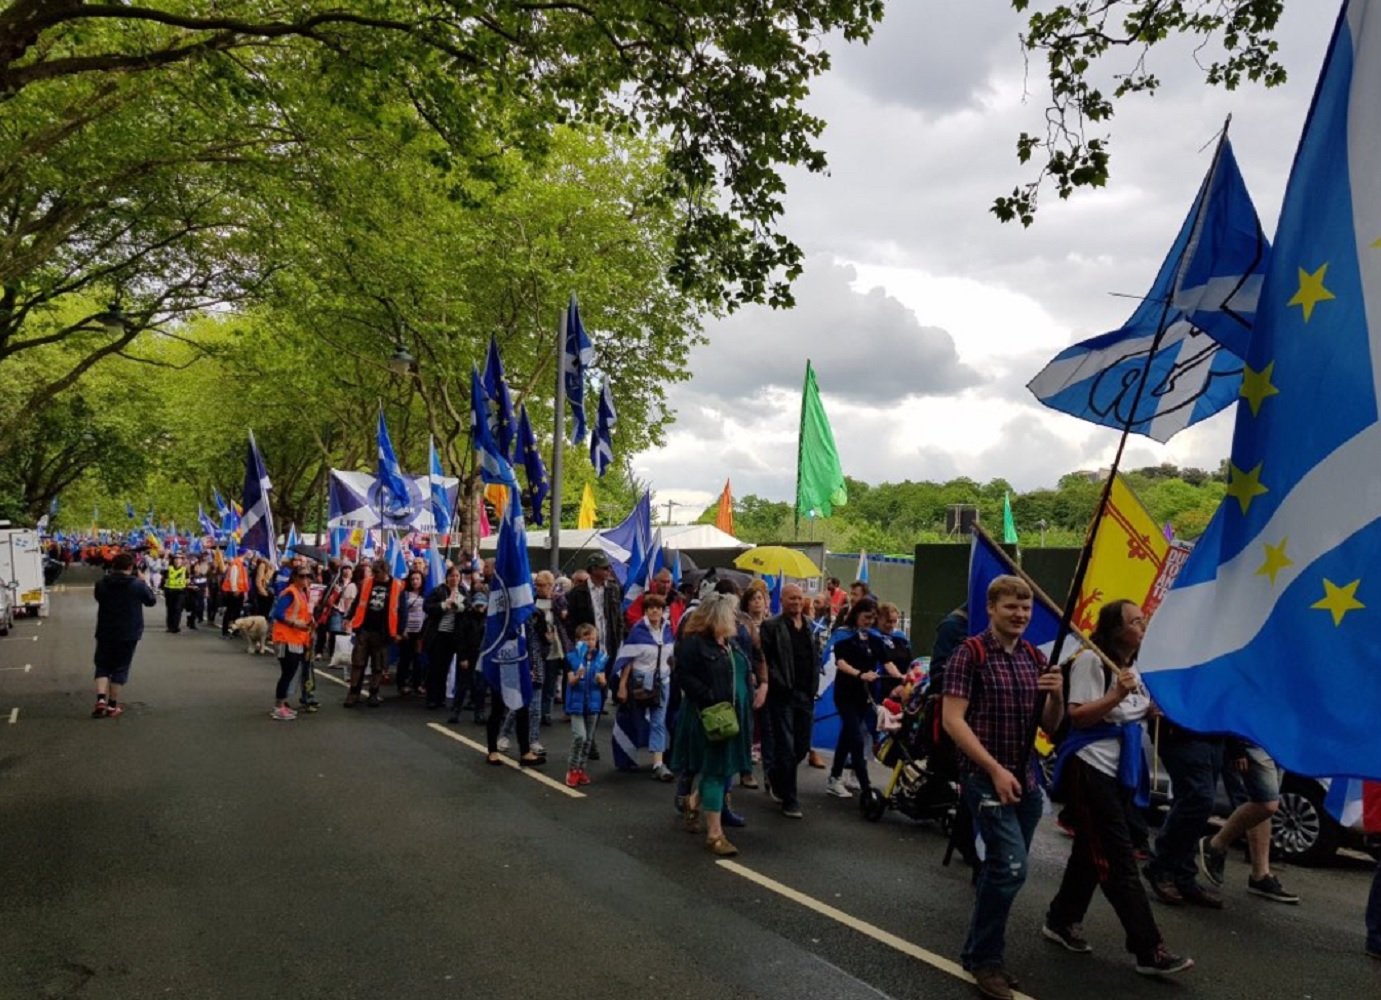 Glasgow reclama la independencia de Escocia (y también hay esteladas)